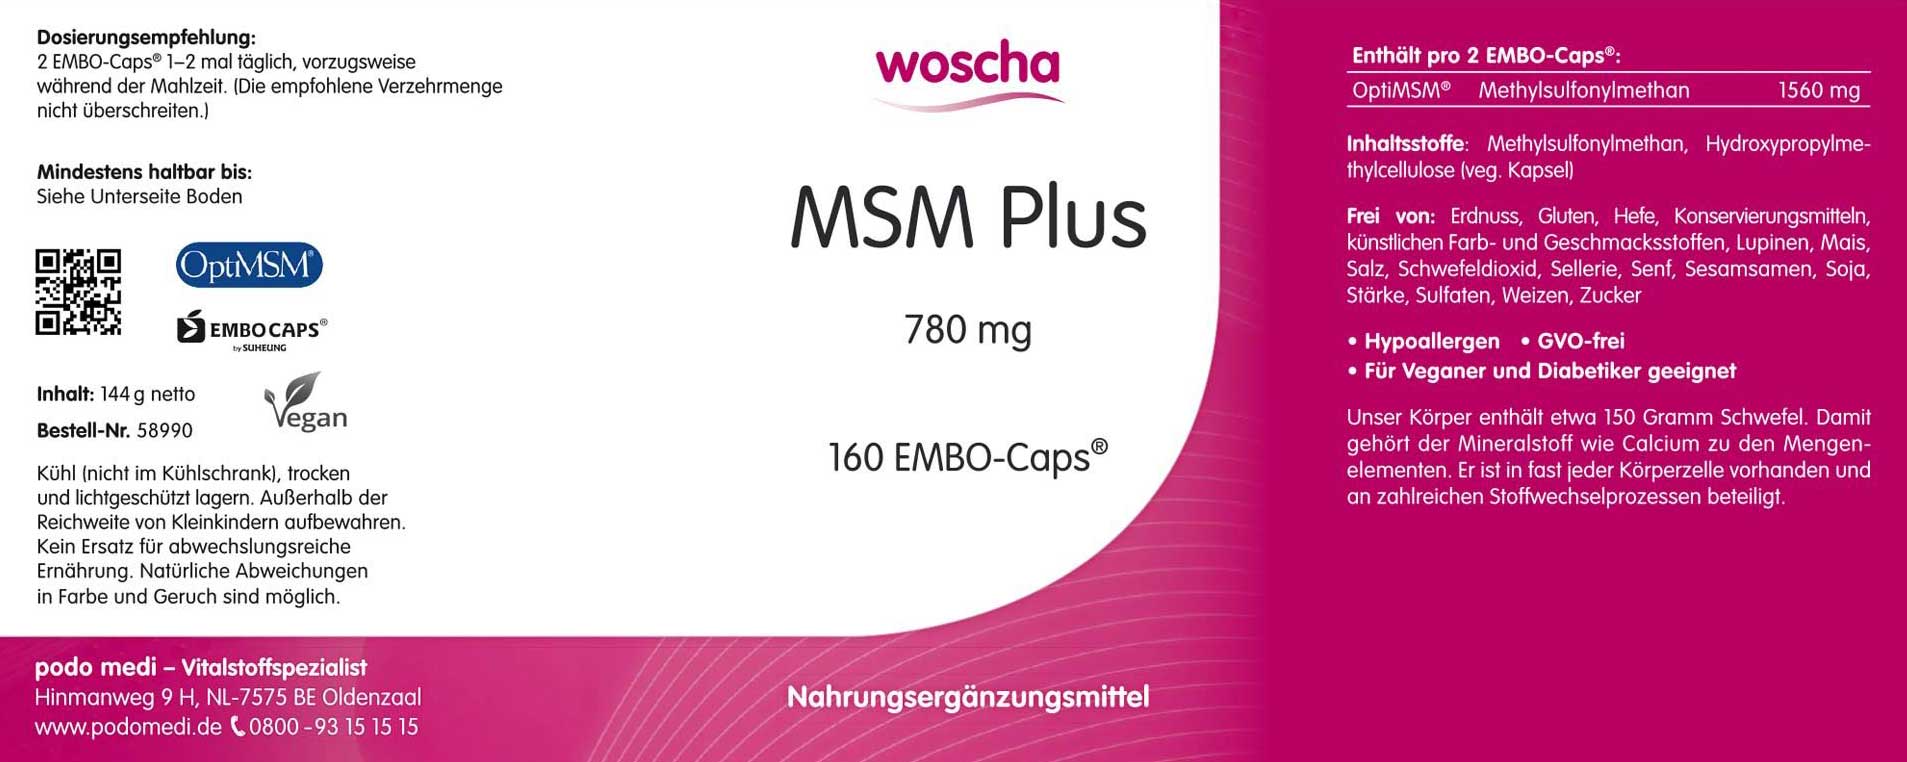 Woscha MSM Plus von podo medi beinhaltet 160 Kapseln Etikett